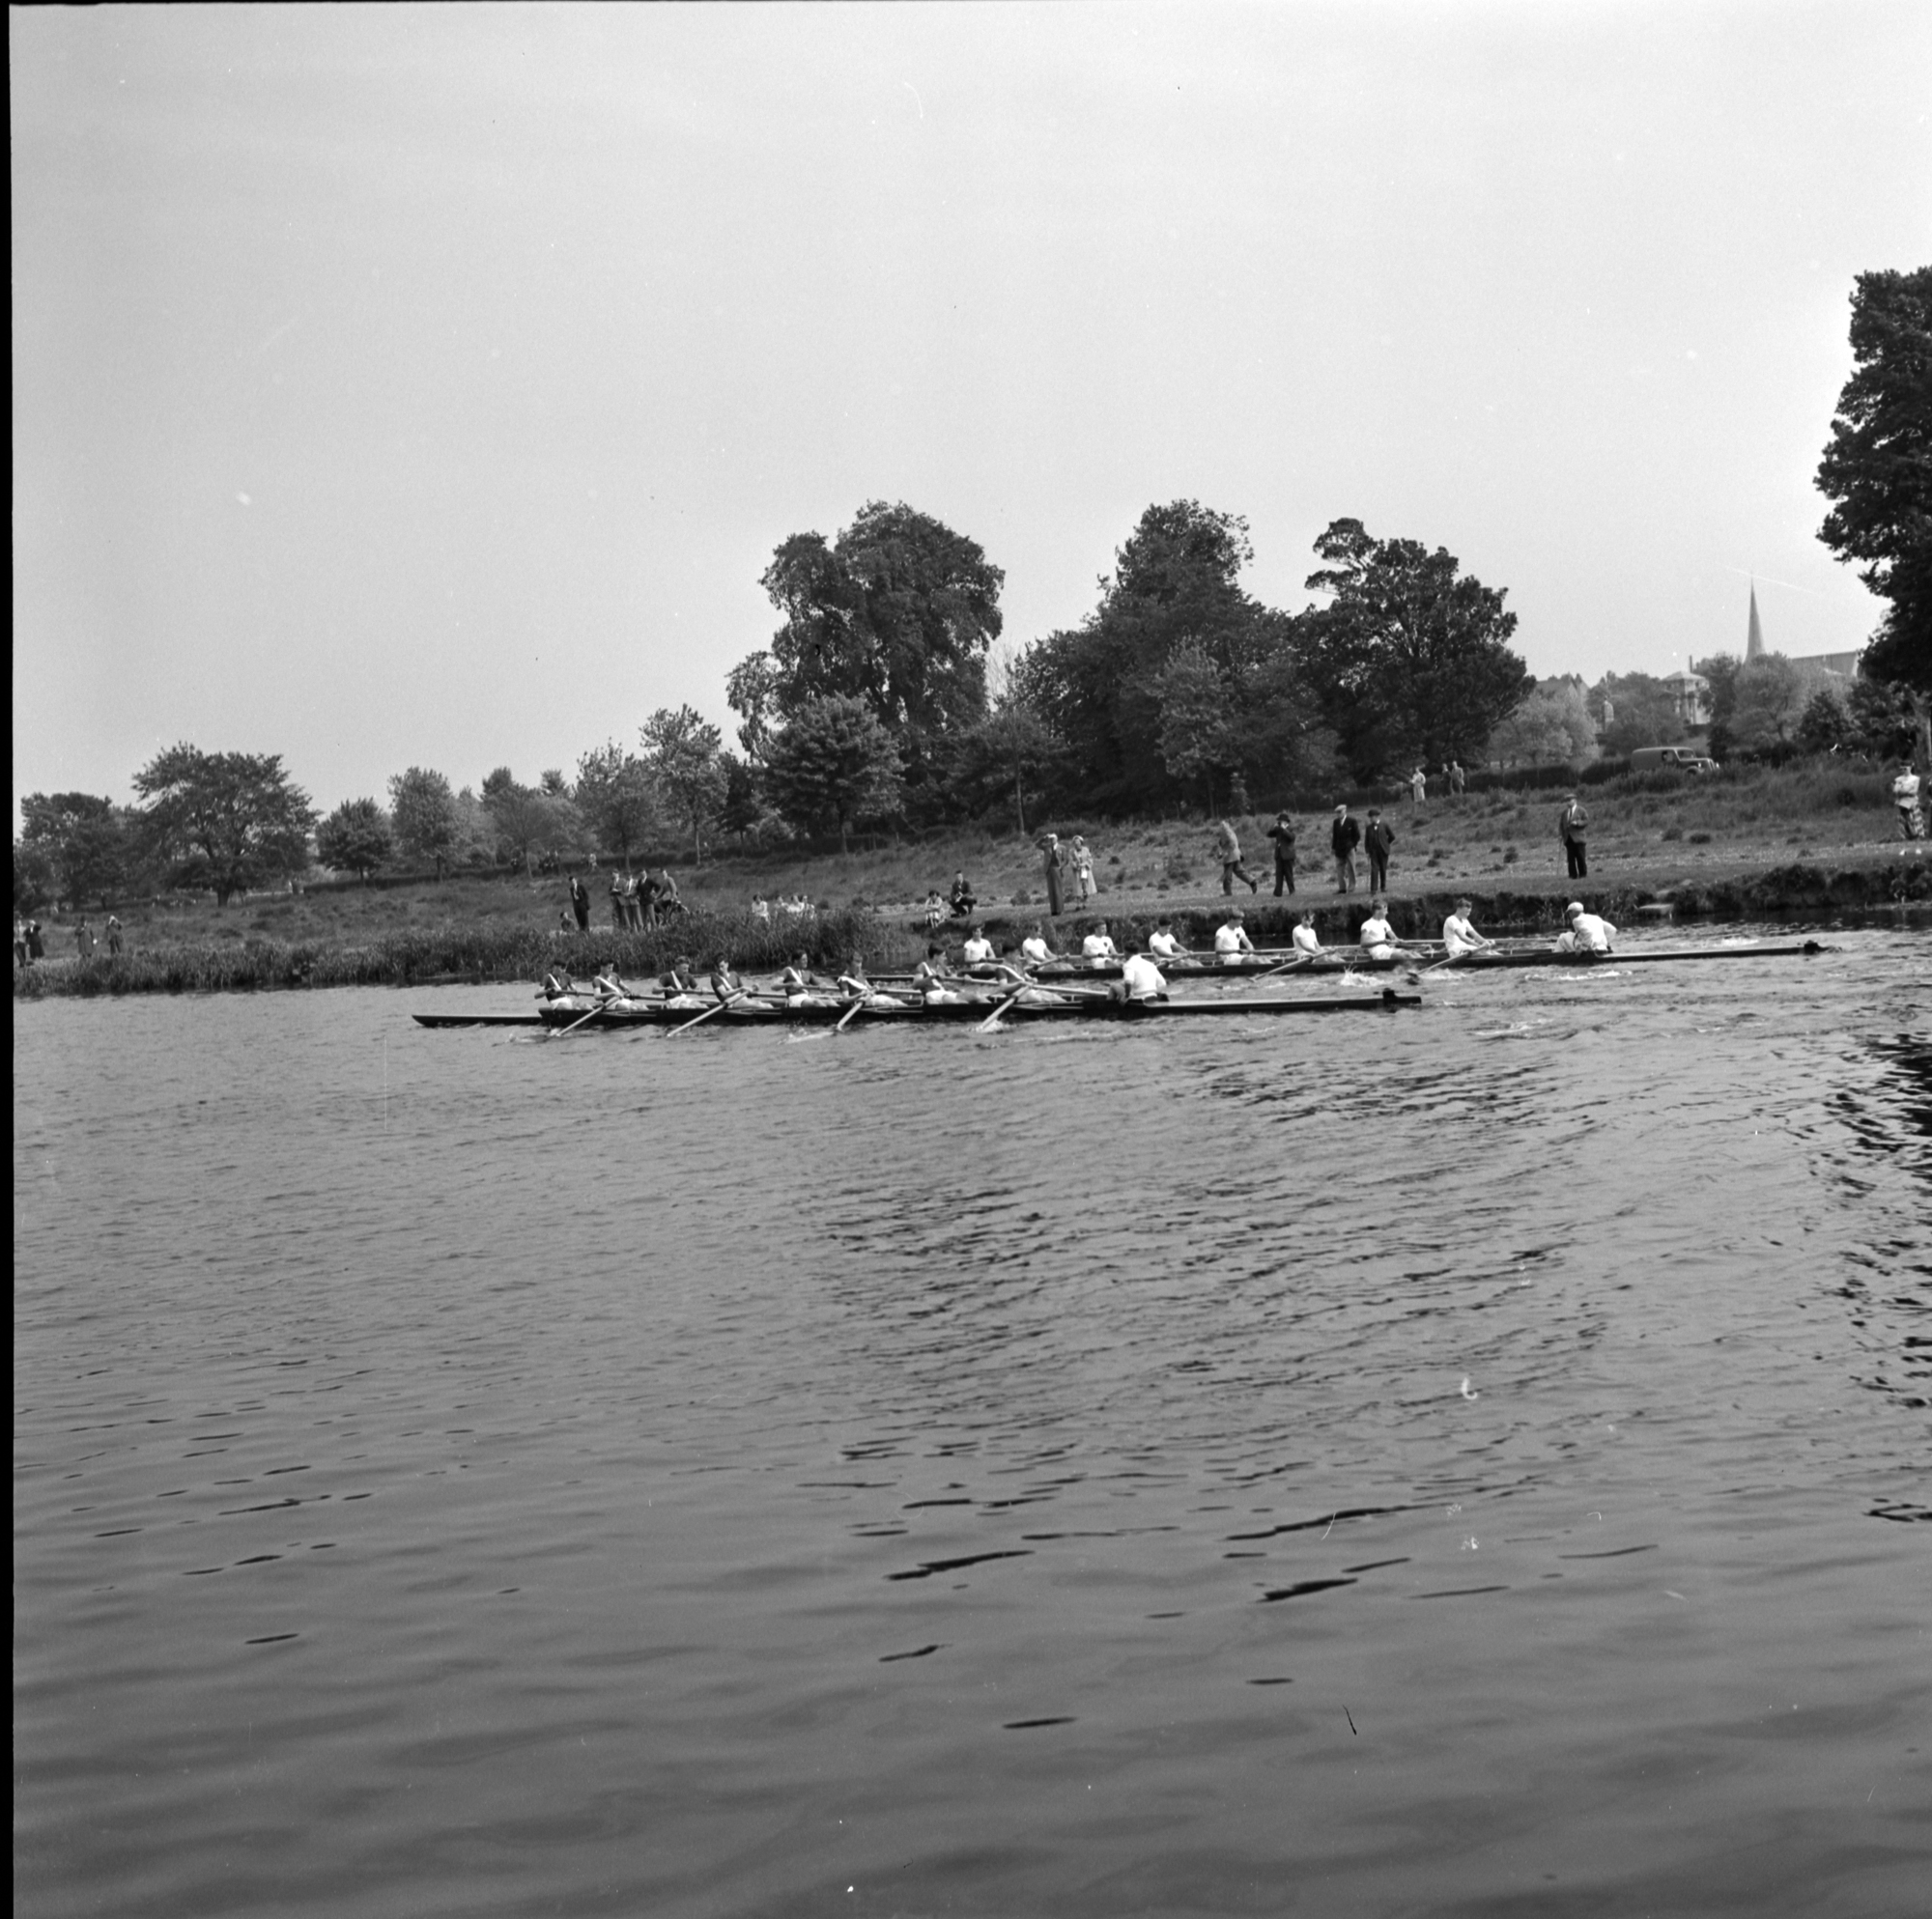 Boat race, Dodder River, Rathfarnham, Co. Dublin